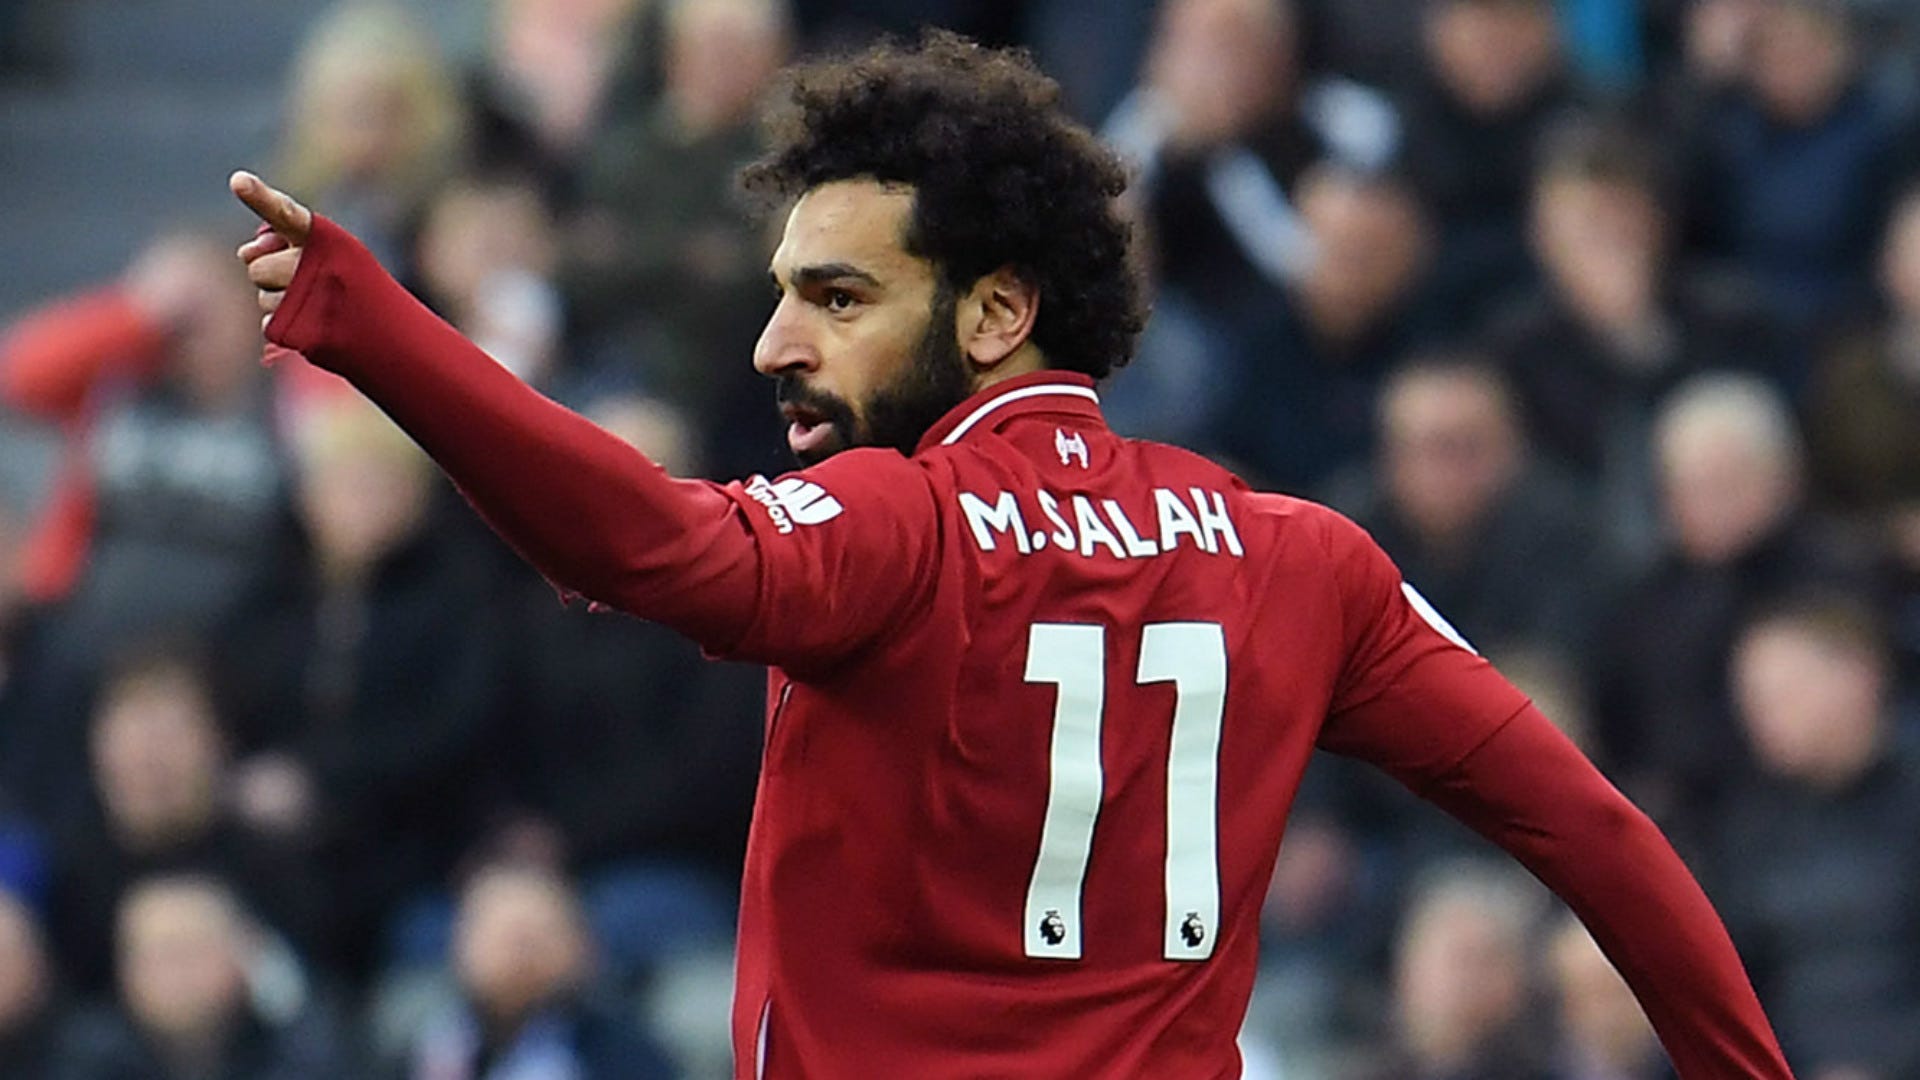 Salah convoca torcida do Liverpool para final da Champions: levem